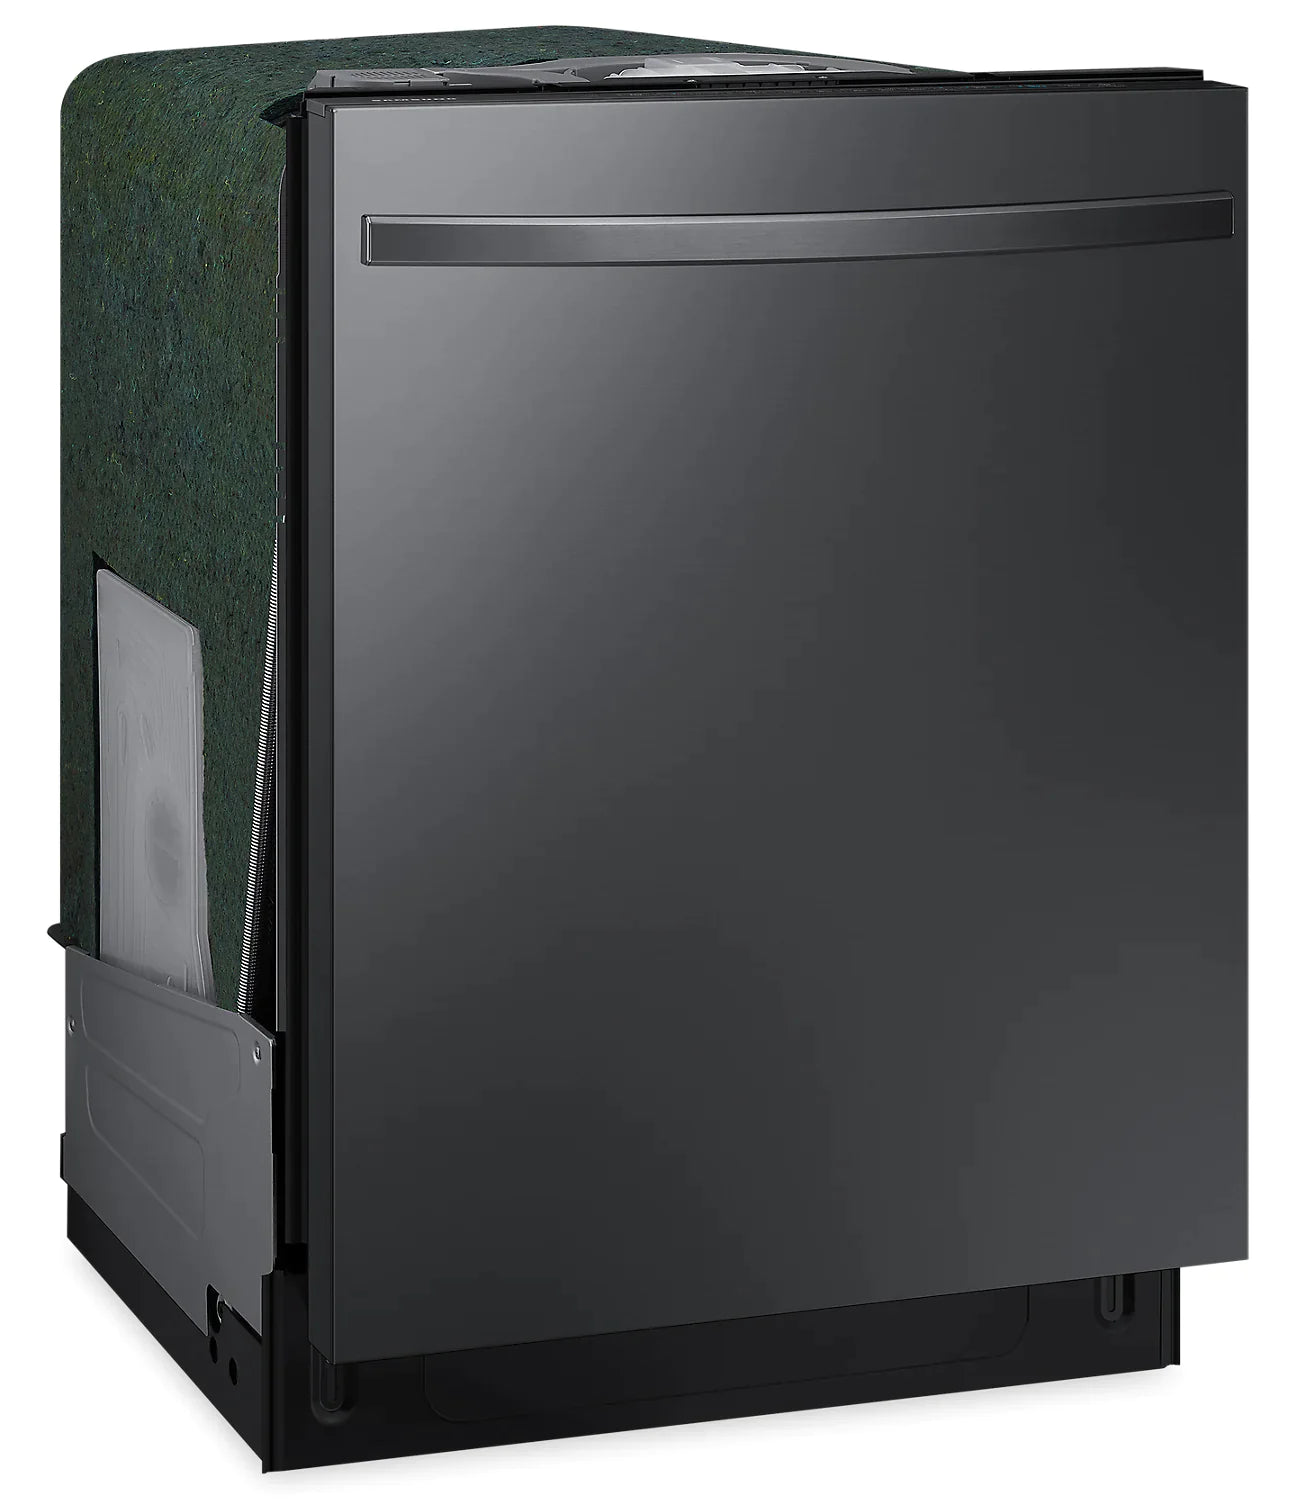 Samsung Dishwashers 24" Black Stainless Steel DW80R5061UG - Appliance Bazaar